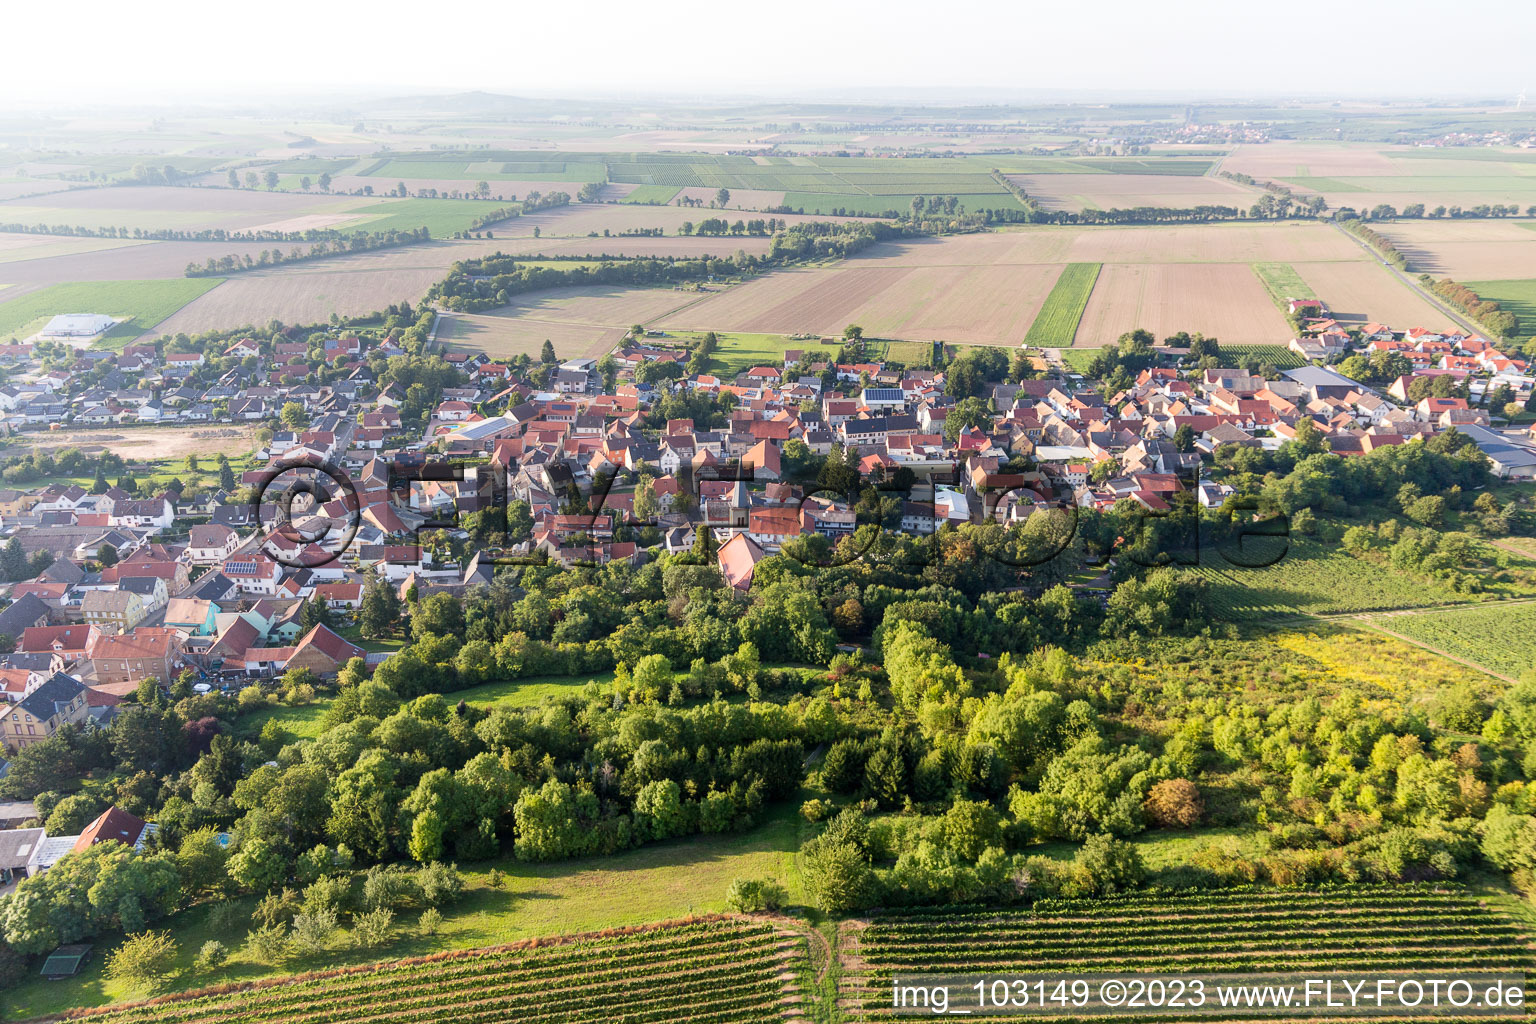 Dittelsheim-Heßloch dans le département Rhénanie-Palatinat, Allemagne vue d'en haut